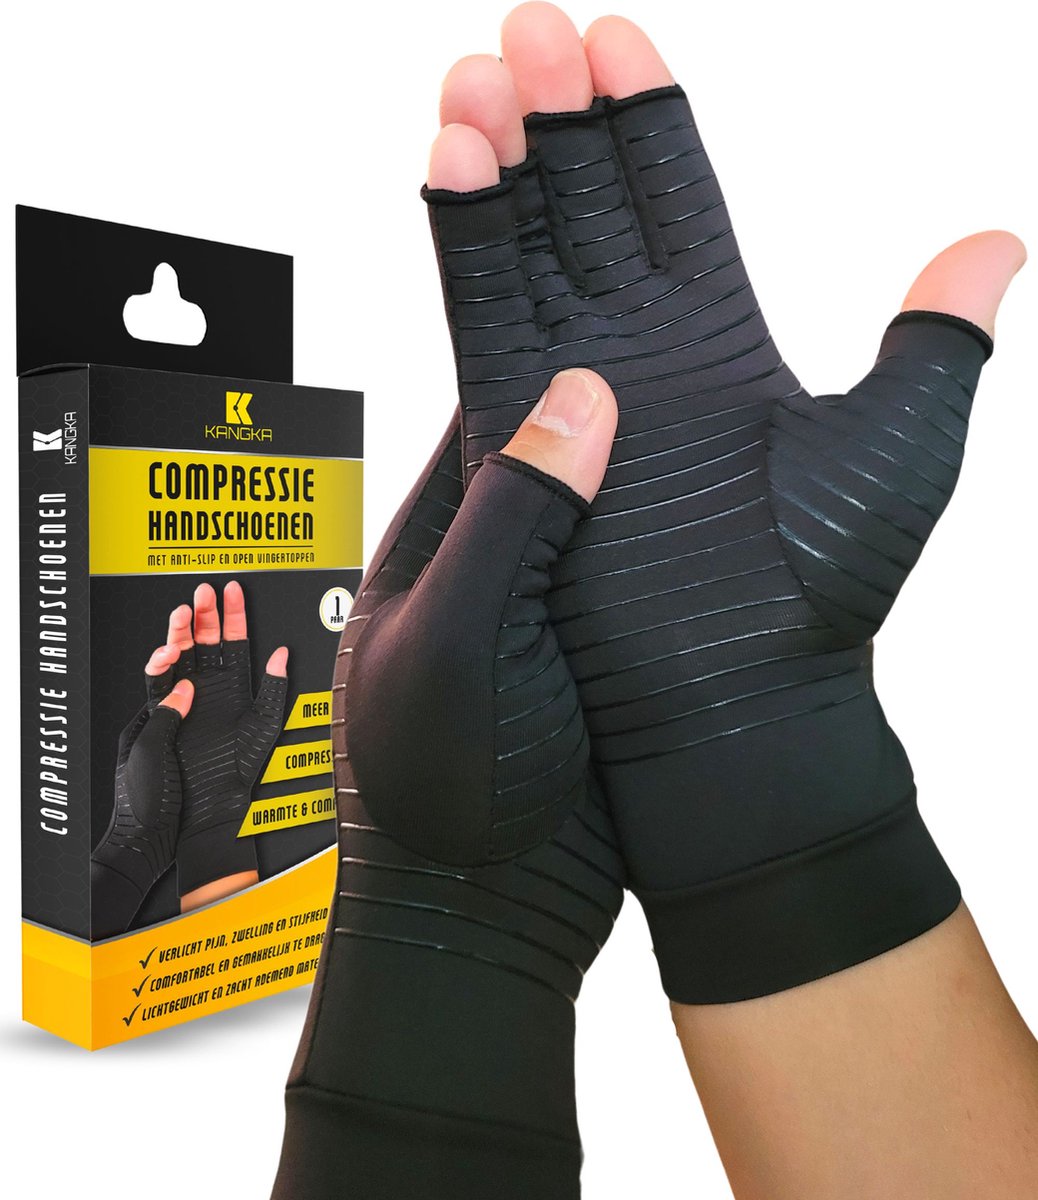 Kangka Reuma Compressie Handschoenen Maat L voor Artritis - Reuma - Artrose - Zwart